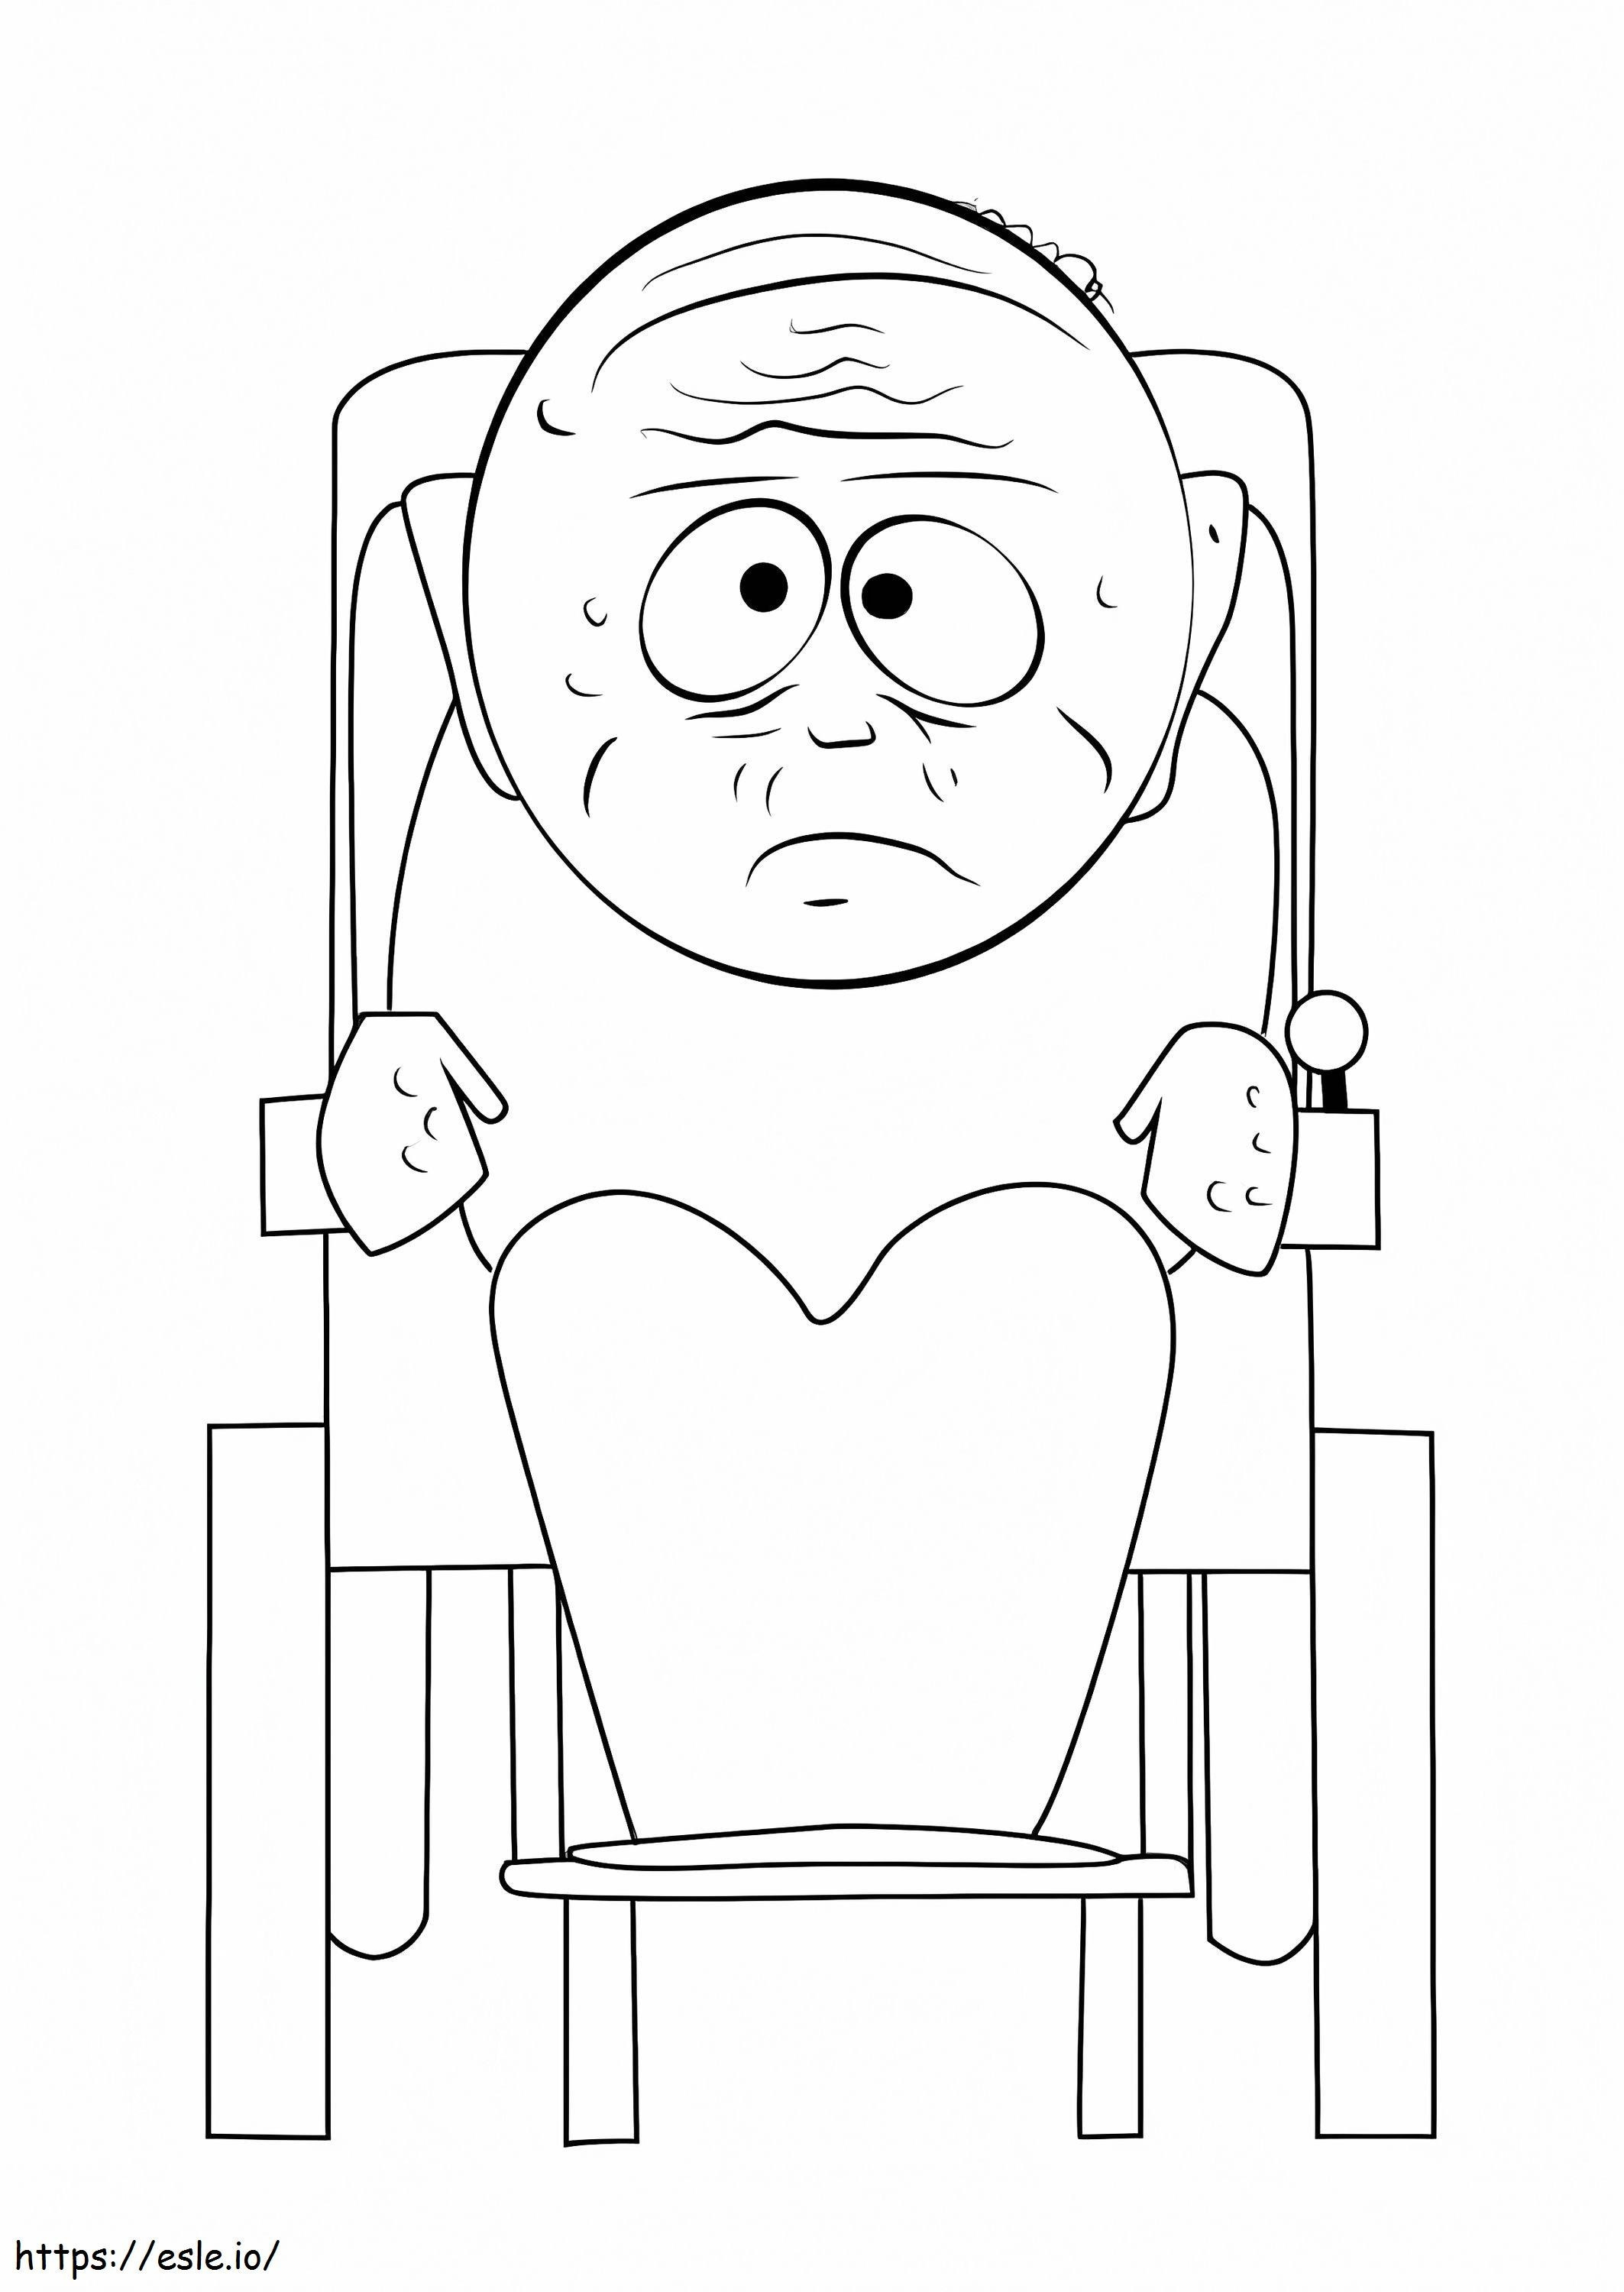 Coloriage Grand-père Marvin Marsh de South Park à imprimer dessin